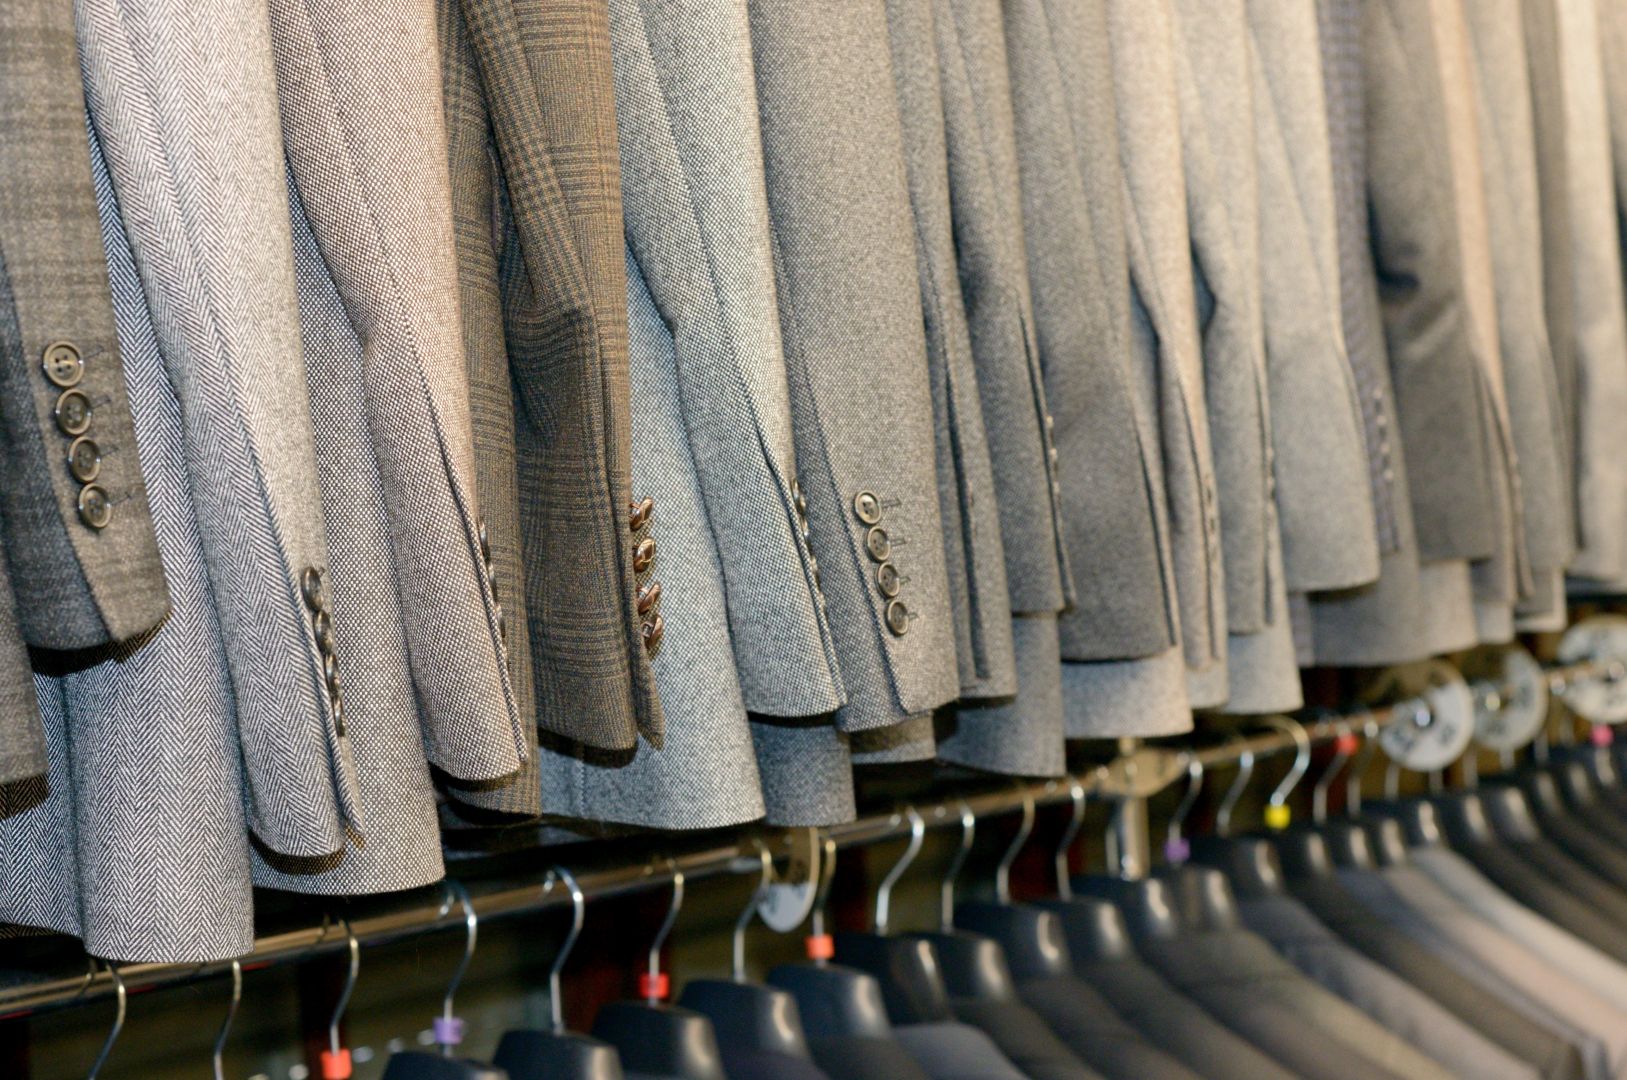 Zakázka na praní a pronájem pracovních oděvů (Pracovní (rukavice, montérky, atd.) oděvy) - Praha